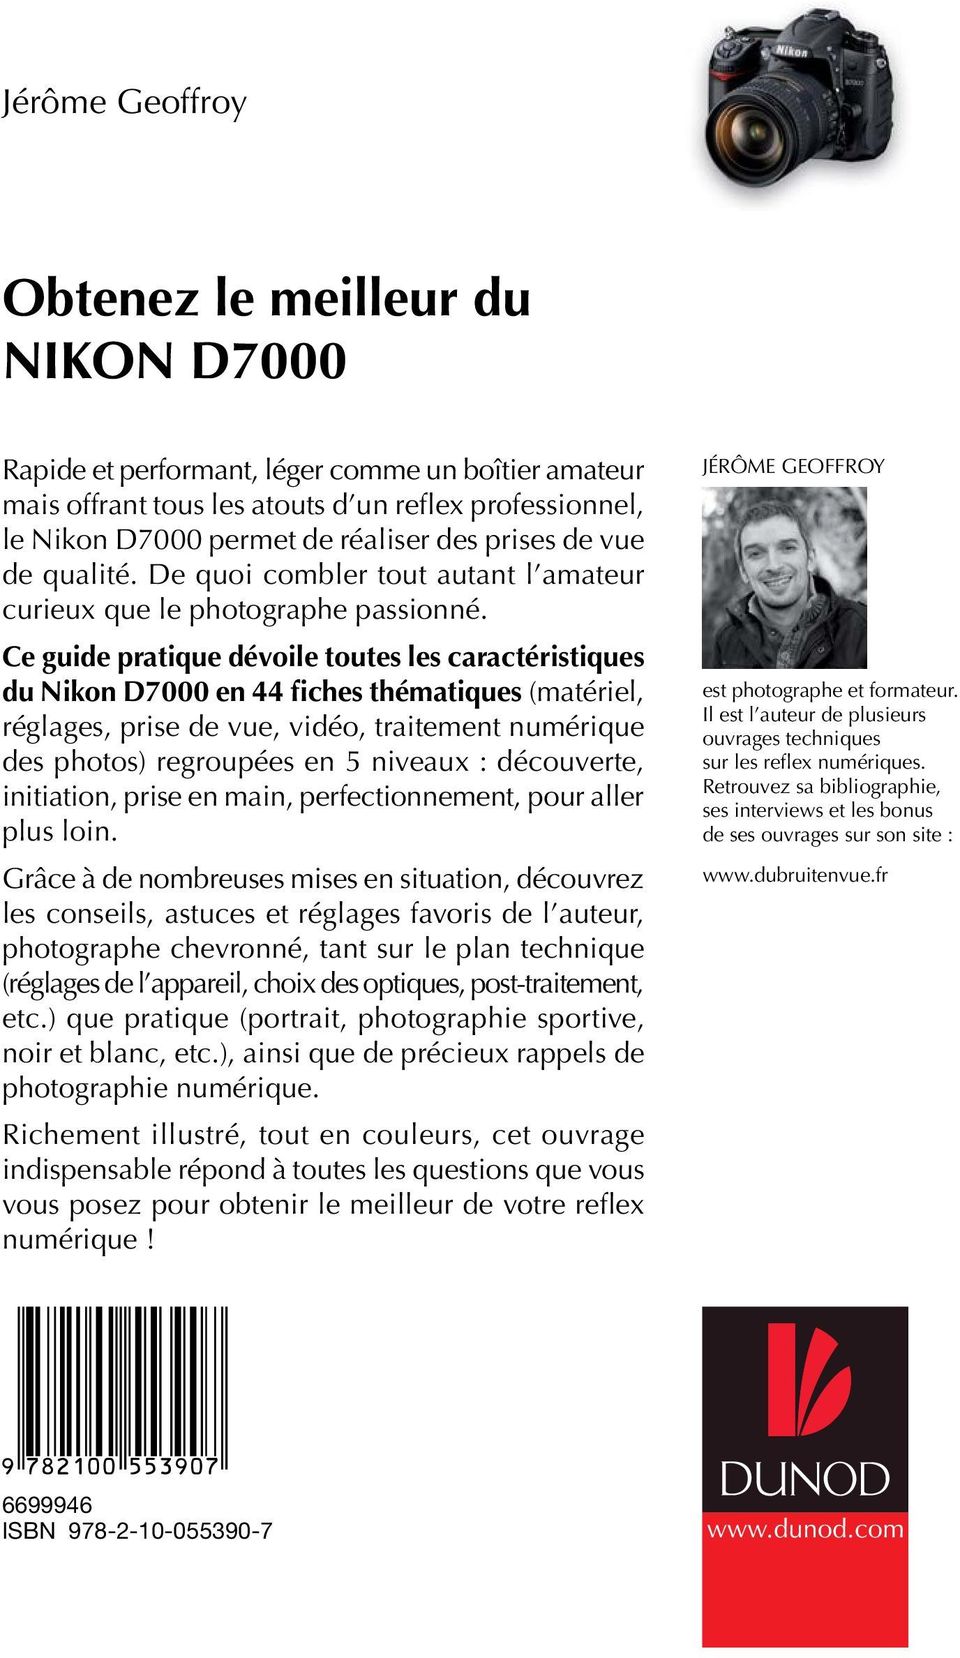 Ce guide pratique dévoile toutes les caractéristiques du Nikon D7000 en 44 fiches thématiques (matériel, réglages, prise de vue, vidéo, traitement numérique des photos) regroupées en 5 niveaux :